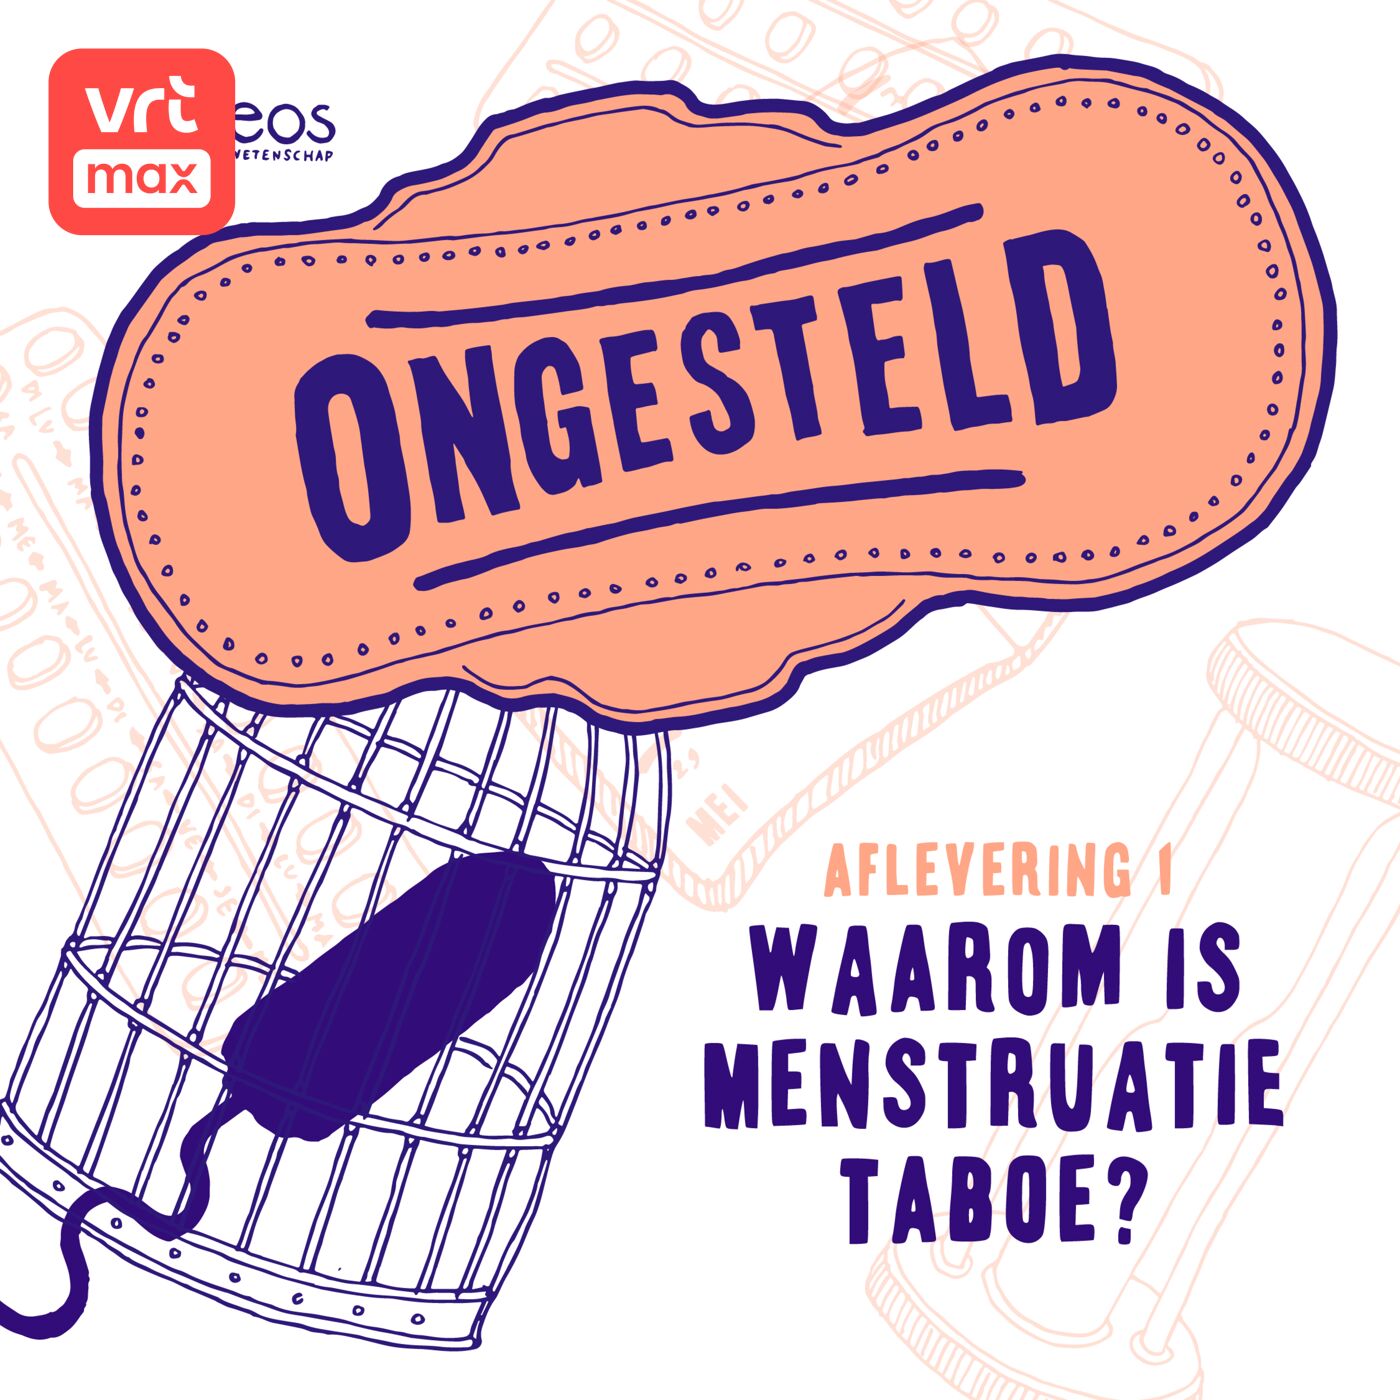 1. Waarom is menstruatie taboe?